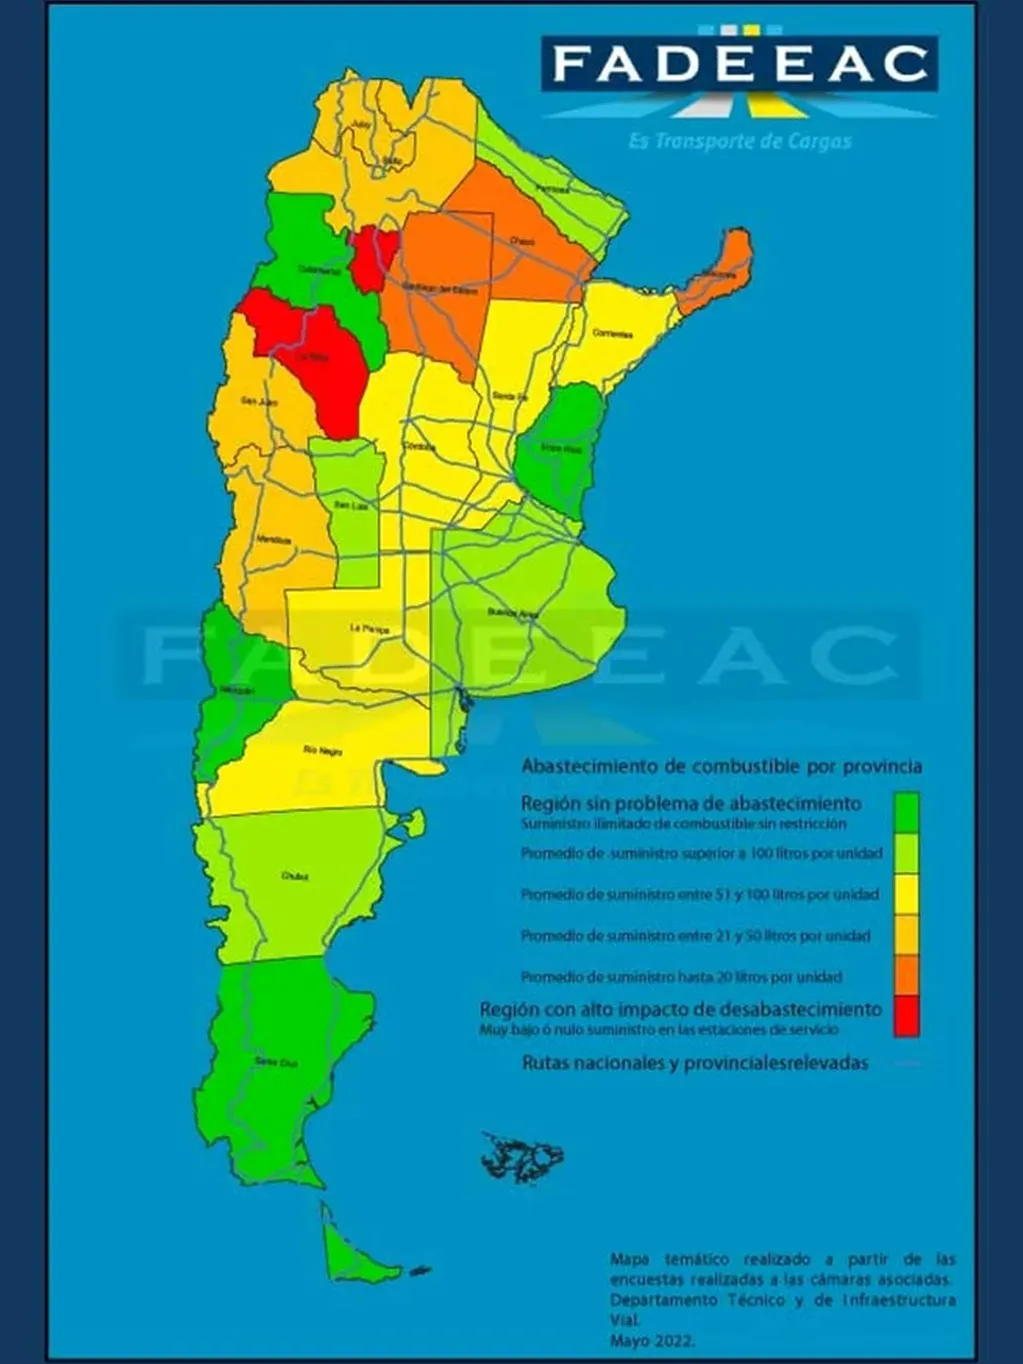 El mapa de abastecimiento de combustibles confeccionado por Fadeeac